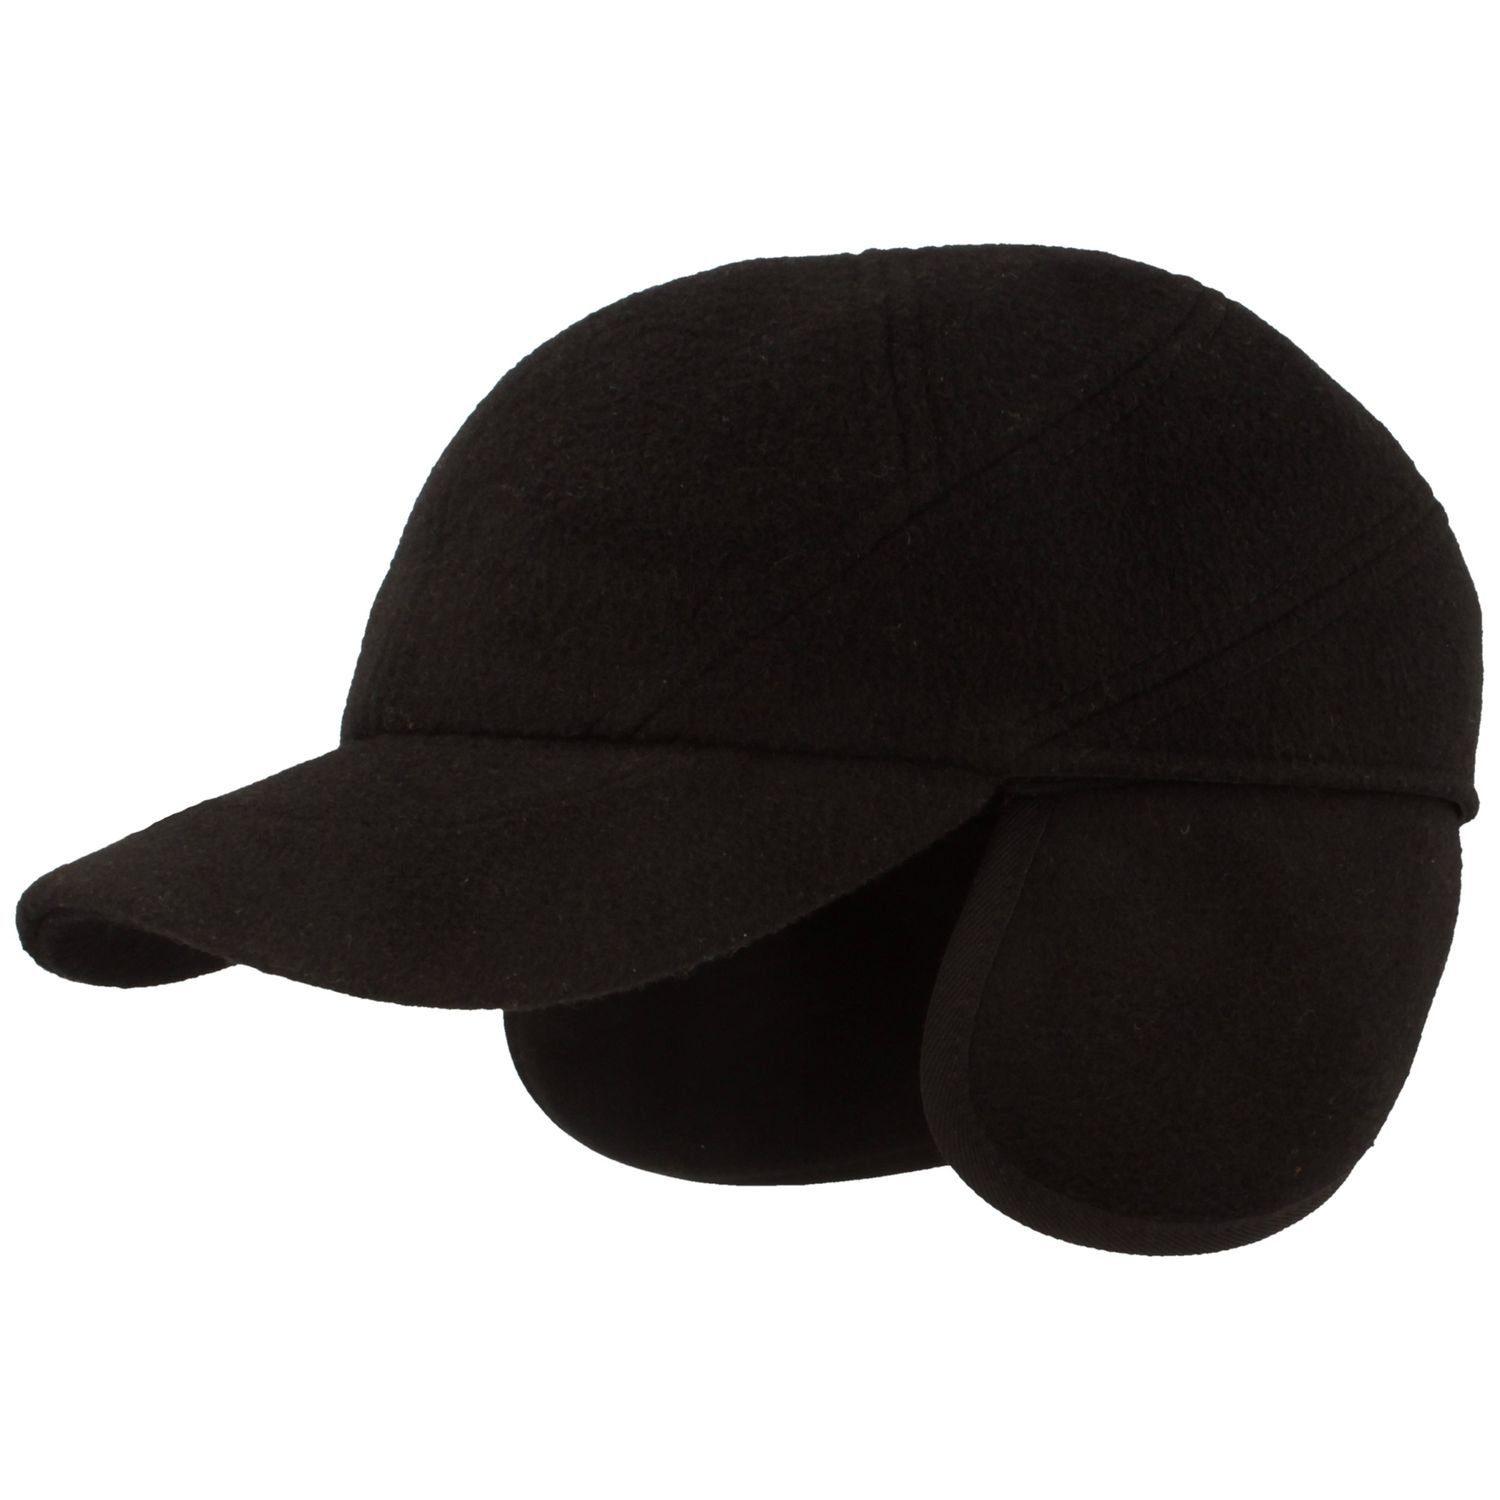 Breiter Baseball Cap mit Ohrenschutz & Teflon-Ausrüstung 500 schwarz